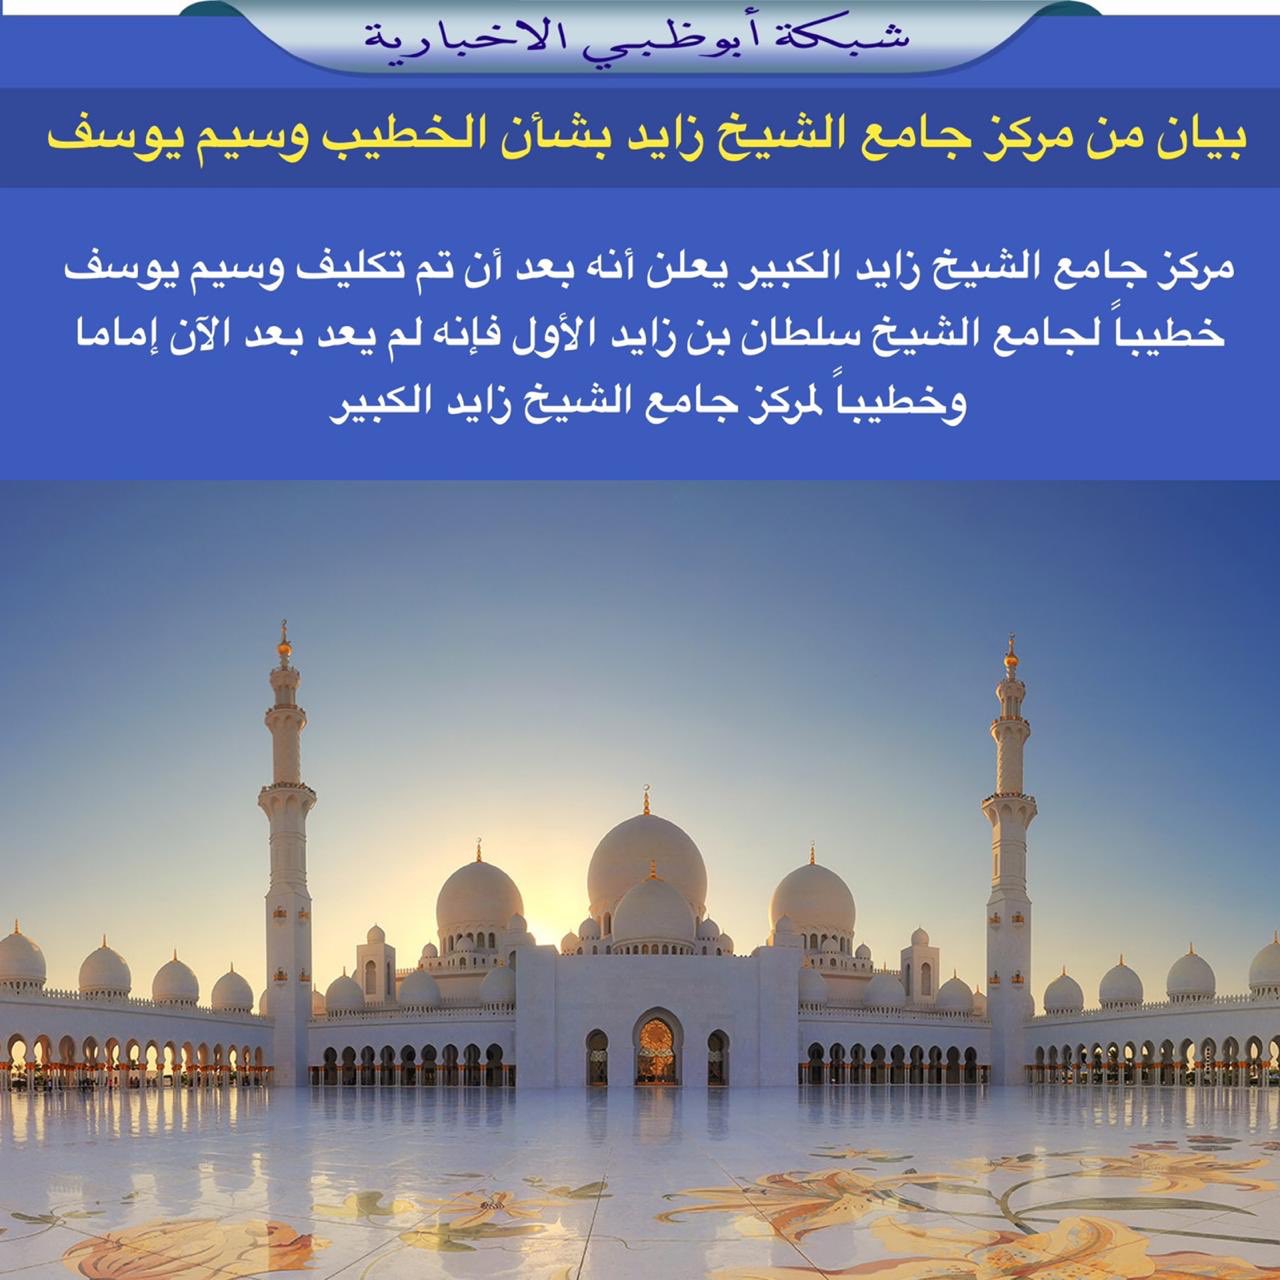 جامع الشيخ زايد صرح حضاري يرسخ الثقافة الإسلامية عبر الإمارات